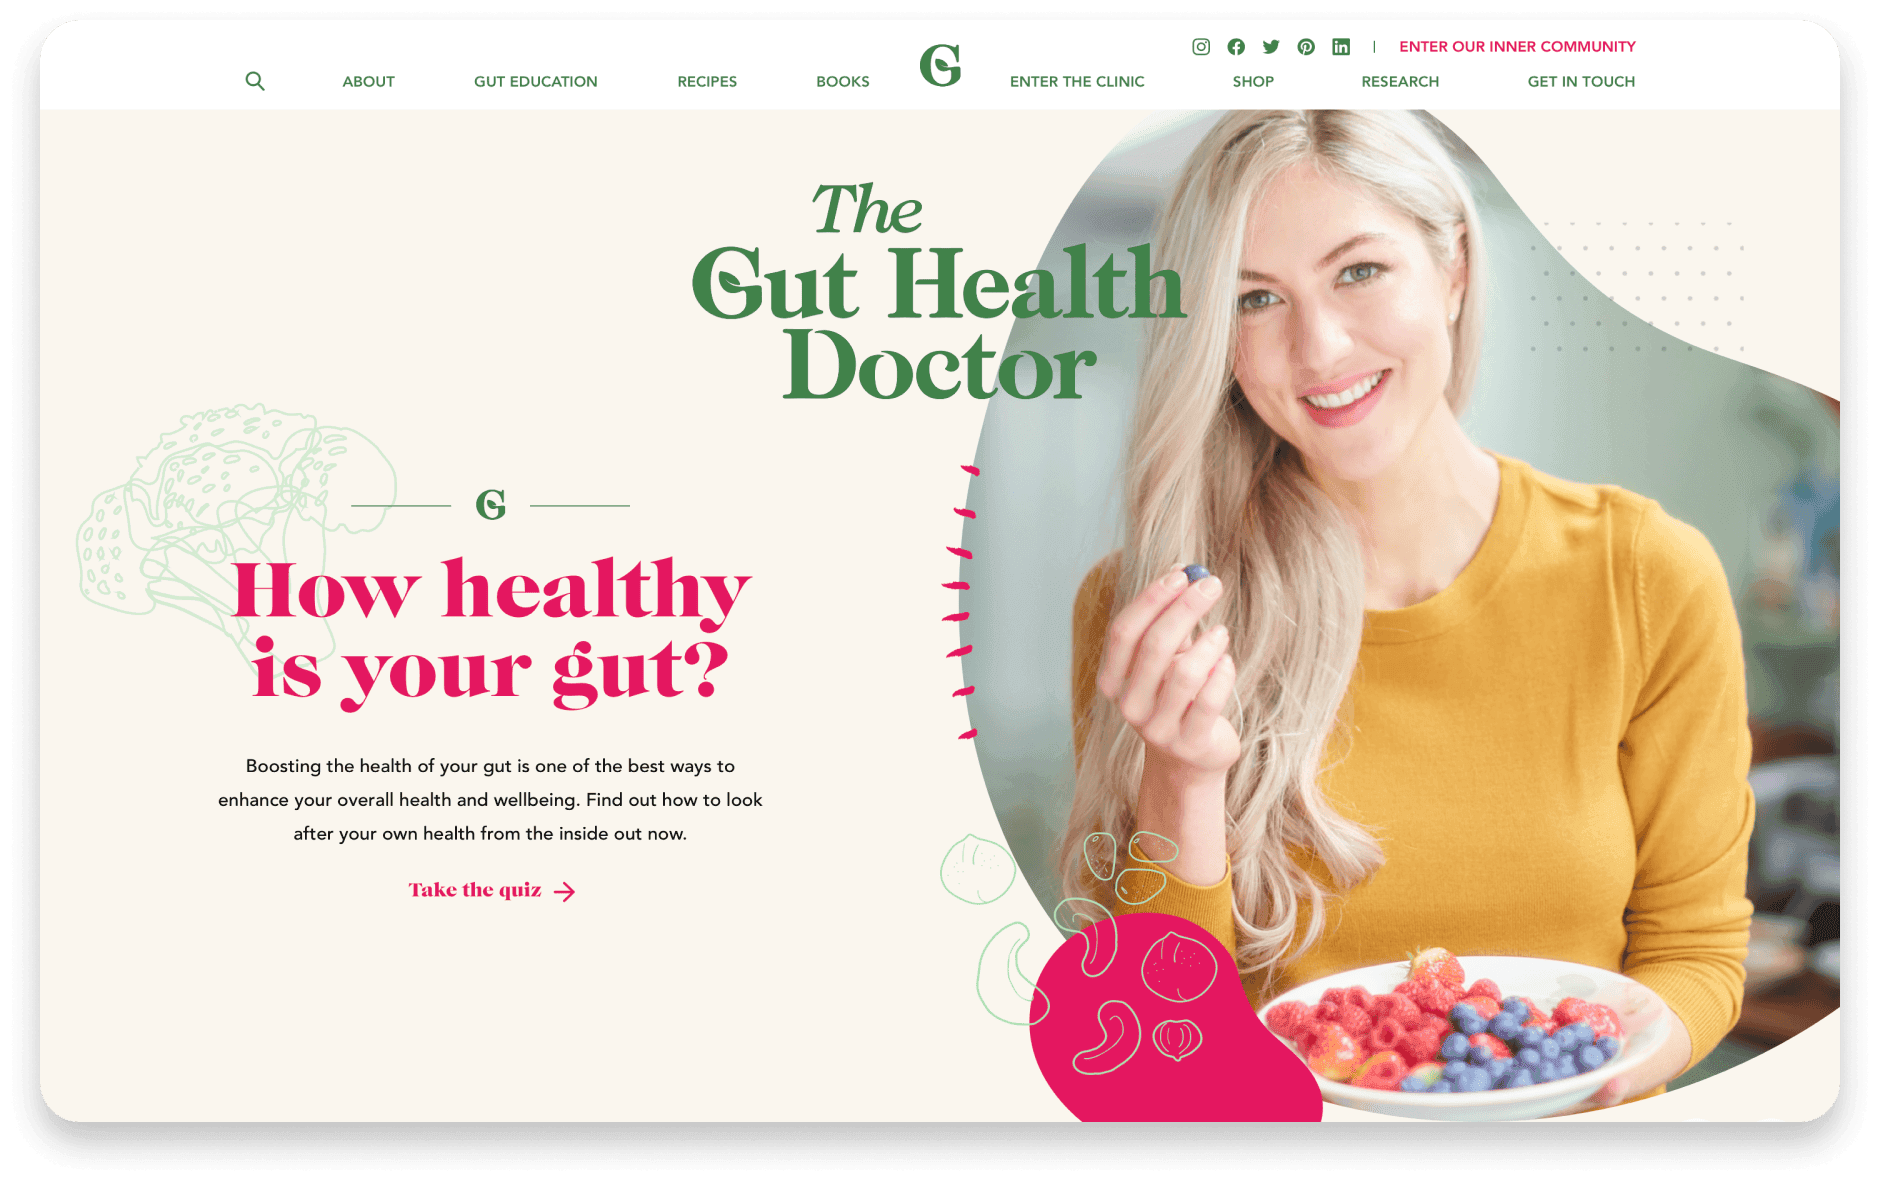 The Gut Health Doctor website